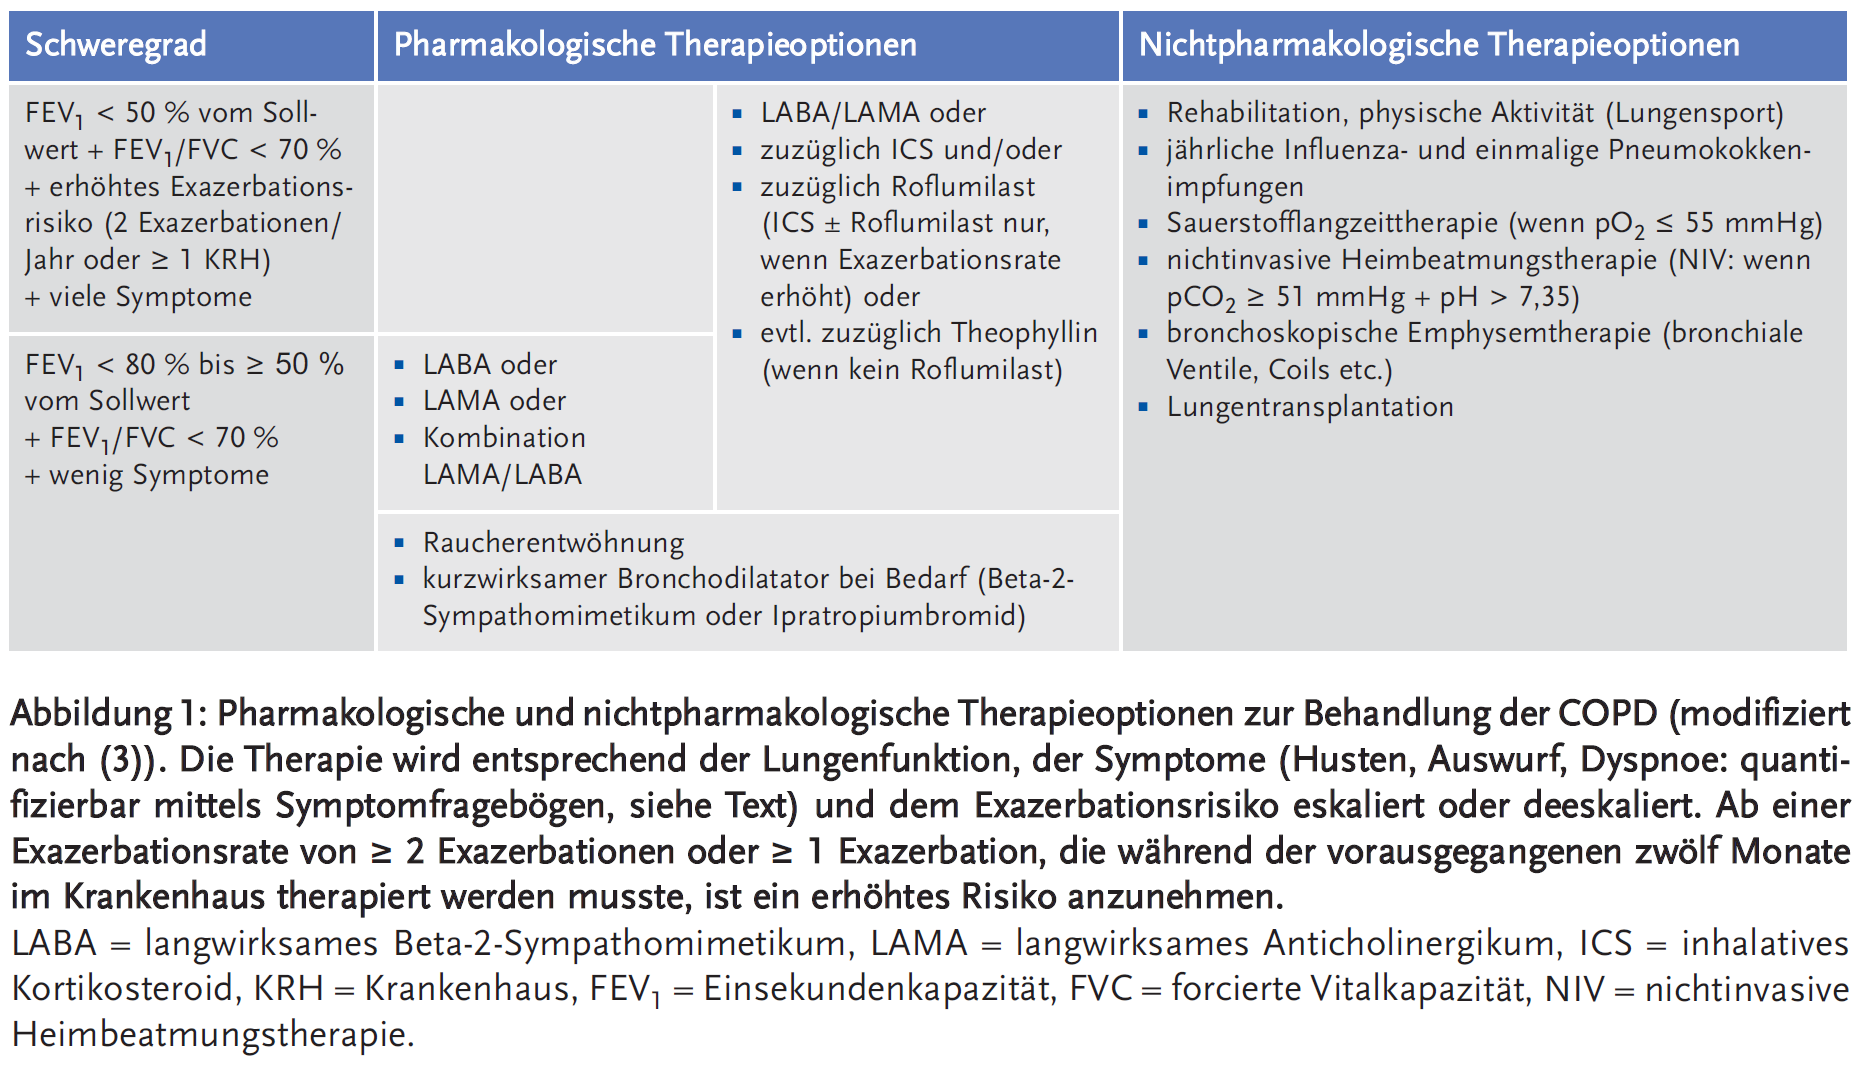 Abbildung 1: Pharmakologische und nichtpharmakologische Therapieoptionen zur Behandlung der COPD (modifiziert nach (3)).